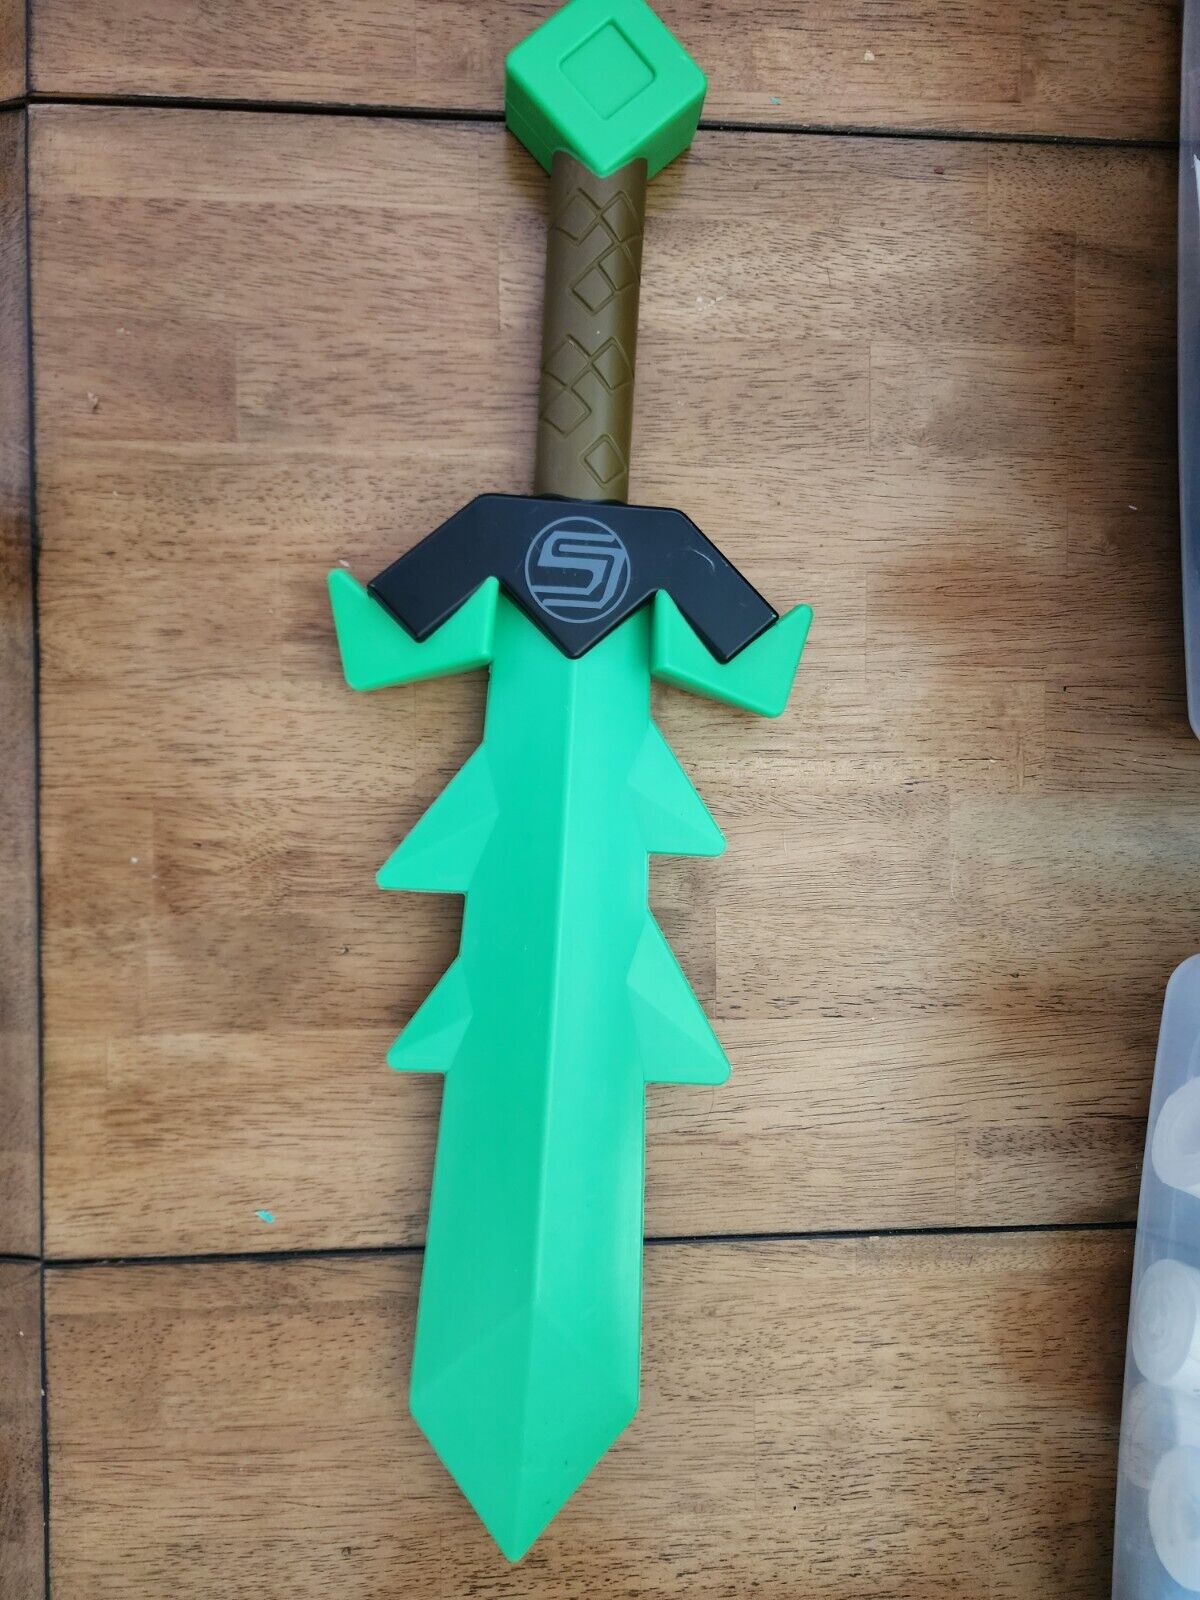 2015 Tube Heroes - Captain Sparklez\' Slime Sword Green Plastic